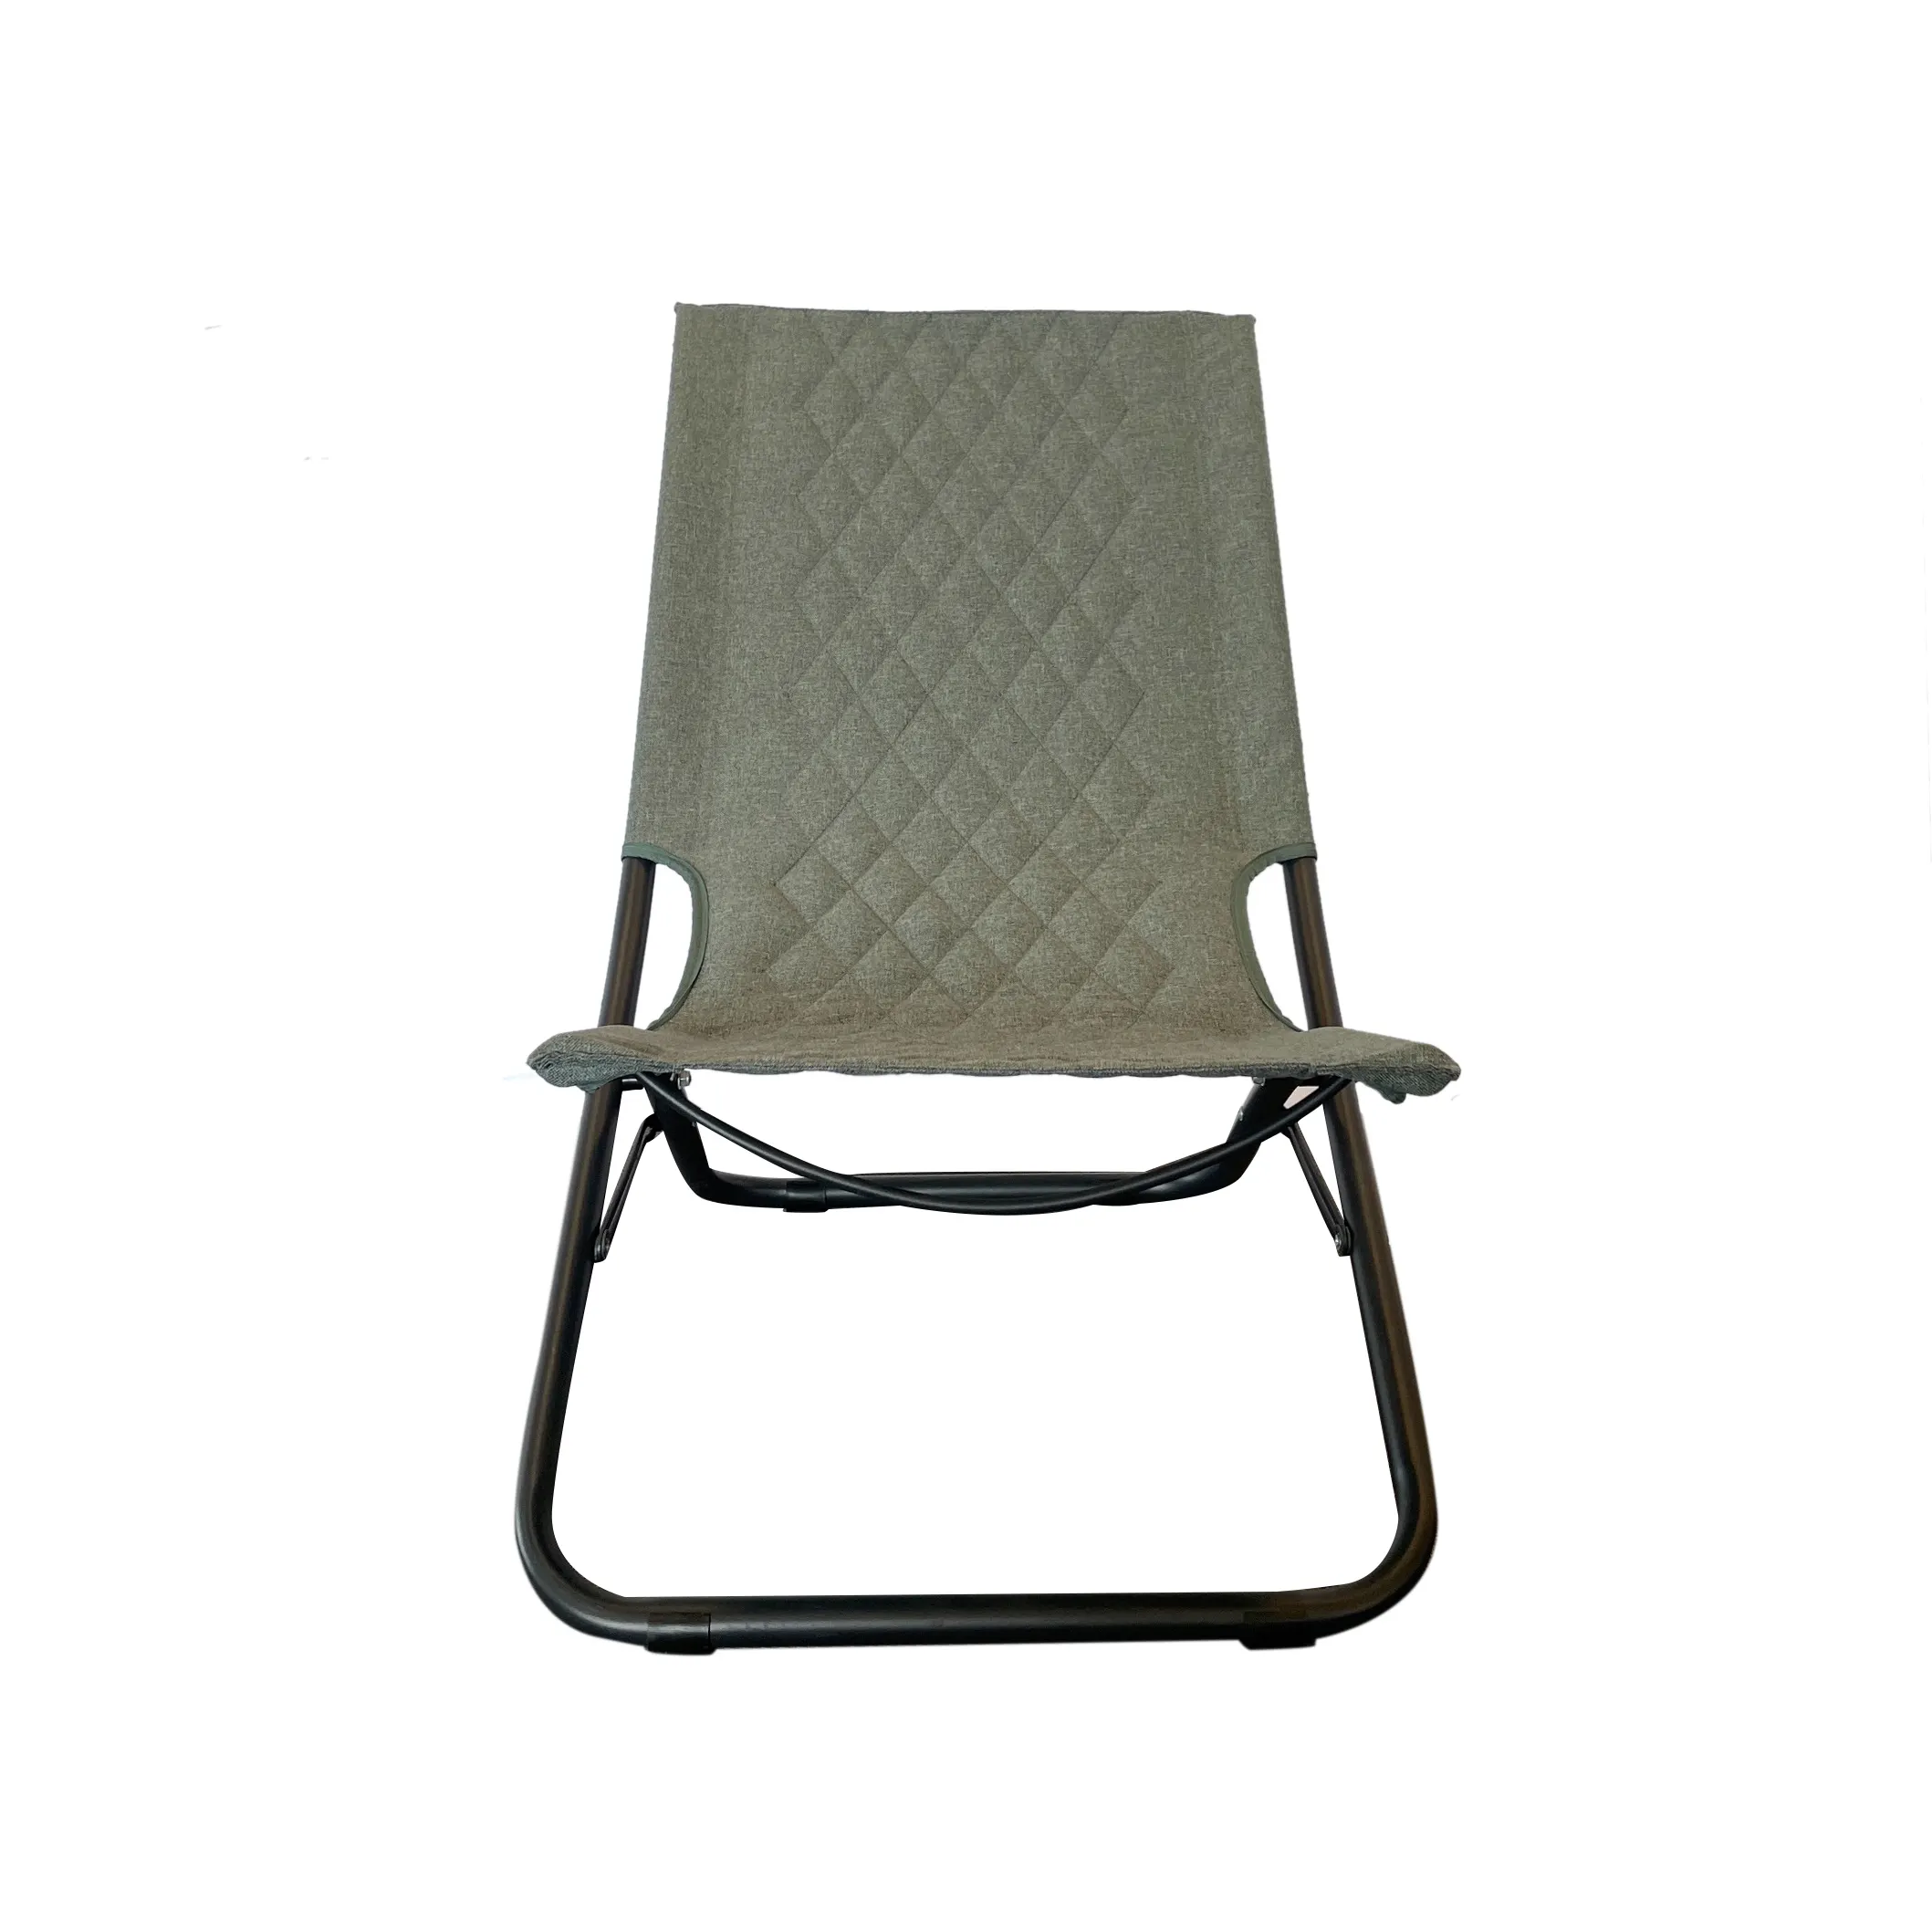 Высококачественный прочный алюминиевый складной стул для кемпинга